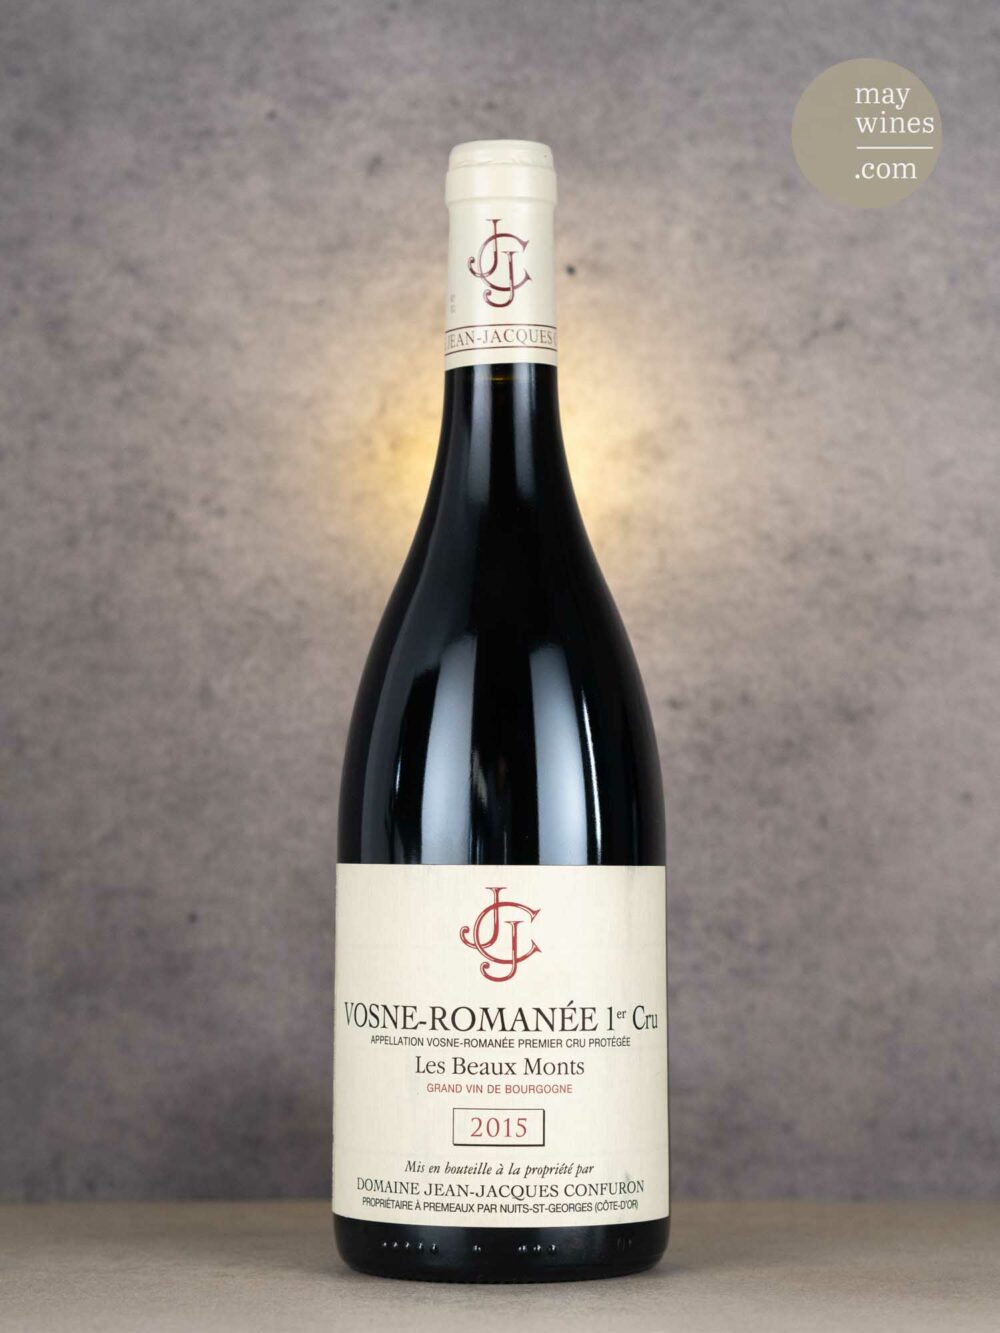 May Wines – Rotwein – 2015 Vosne-Romanée Les Beaux Monts Premier Cru - Domaine Jean Jacques Confuron